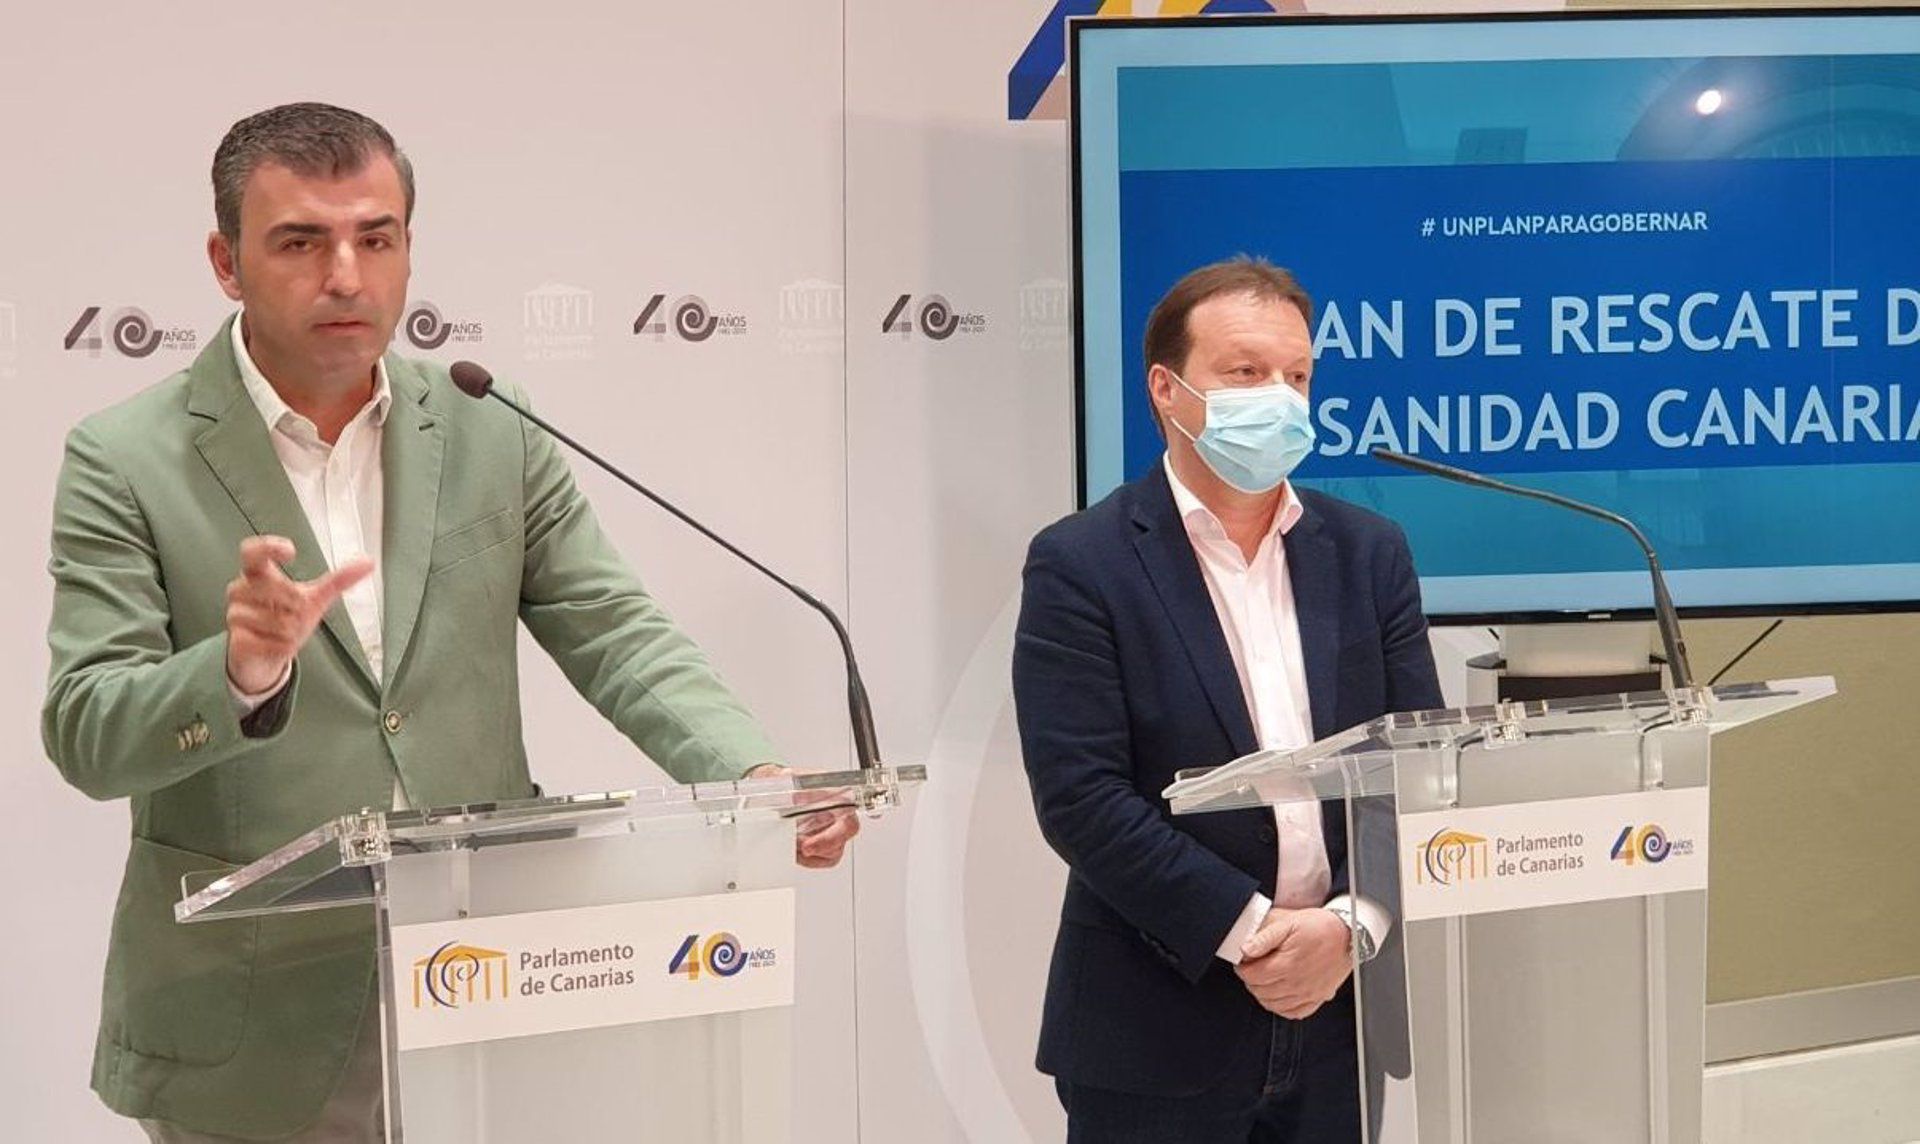 El PP presenta un plan de rescate para la Sanidad Canaria